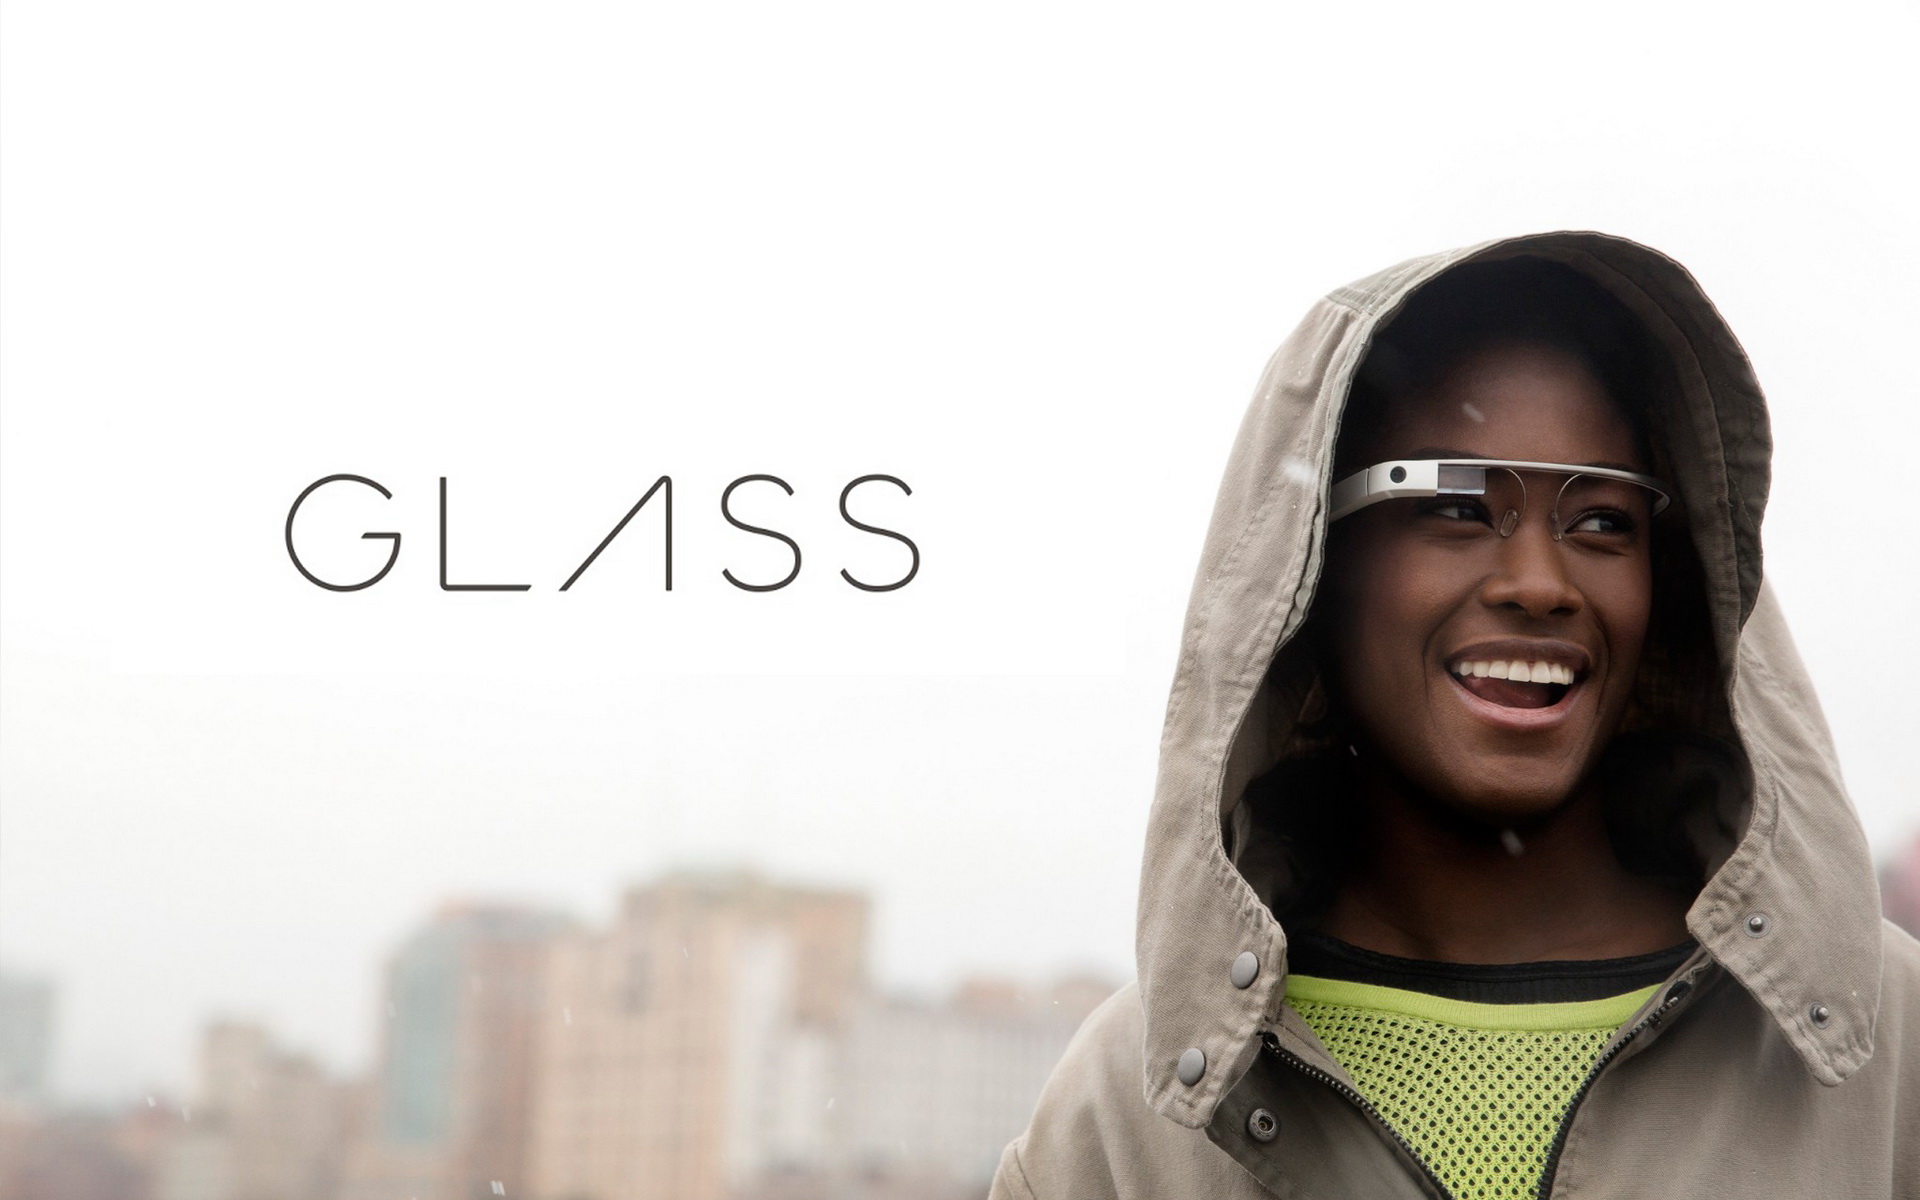 Vnitřnosti Google Glass odhaleny. Jsou podobné telefonu Galaxy Nexus